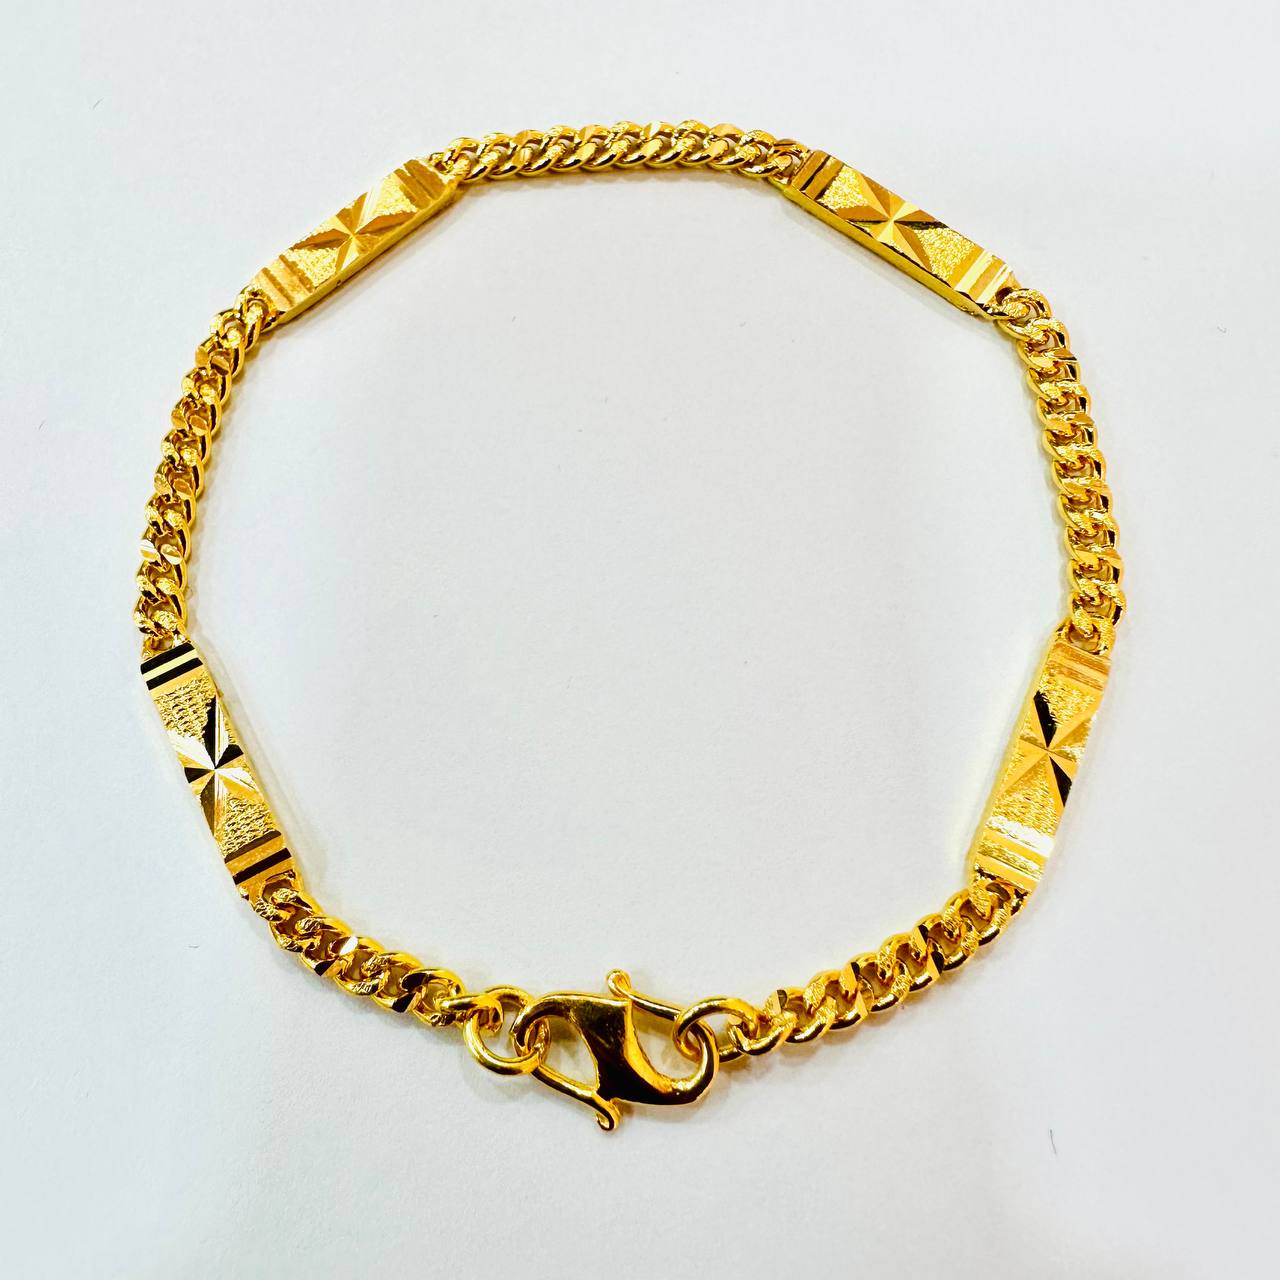 22k / 916 Gold Solid Bar and Milo bracelet-916 gold-Best Gold Shop